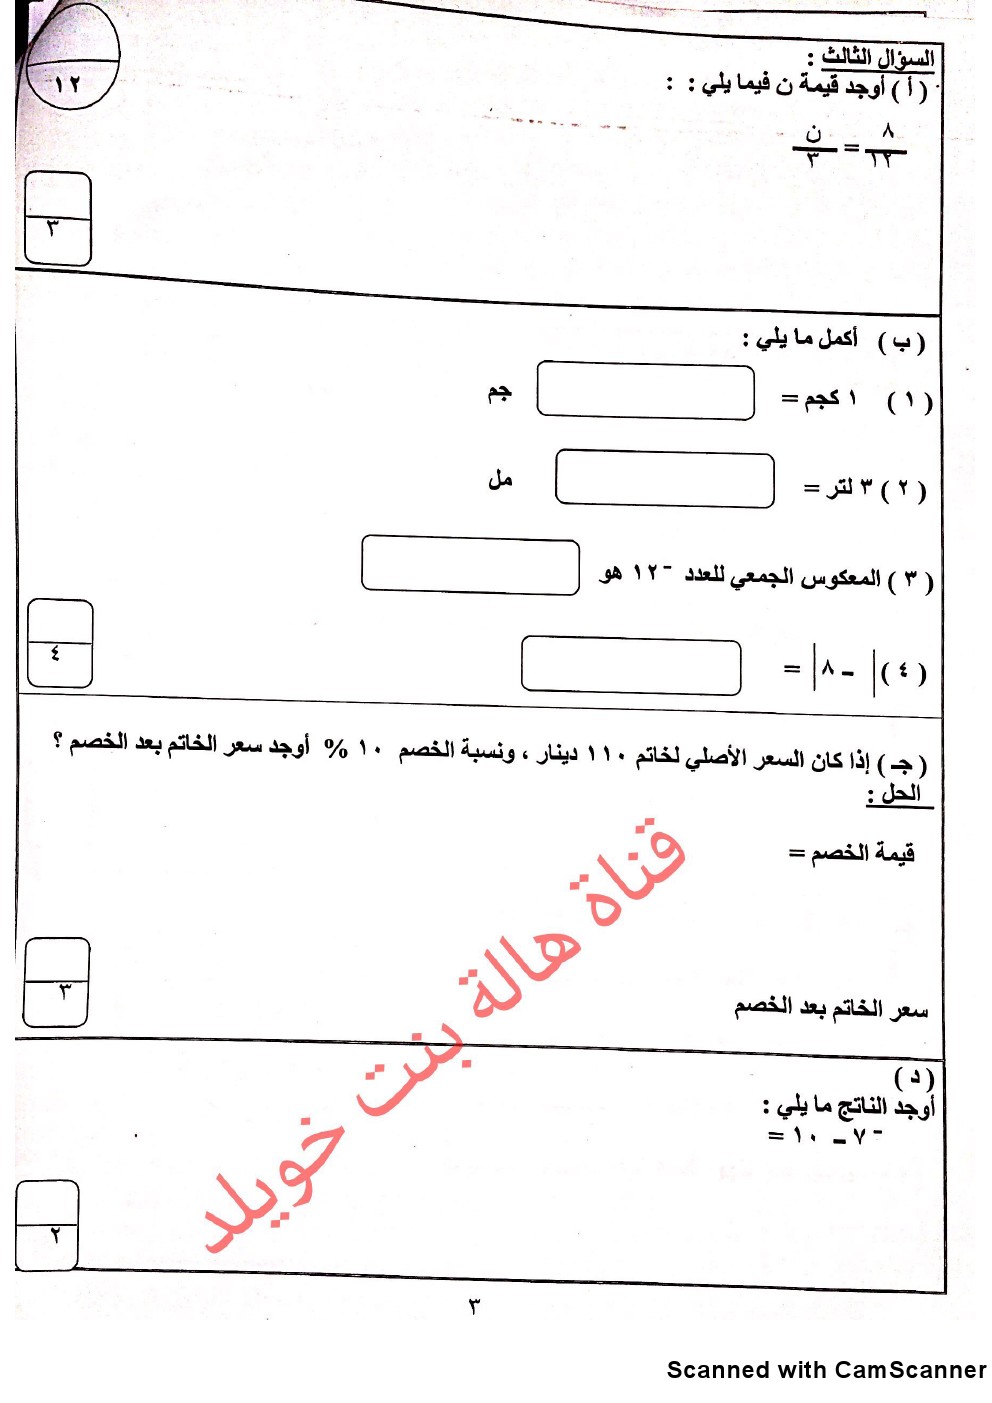 نموذج اختبار لوحدة الكبار ومحو الامية في مادة الرياضيات الصف السادس رياضيات الفصل الثاني ملفات الكويت التعليمية